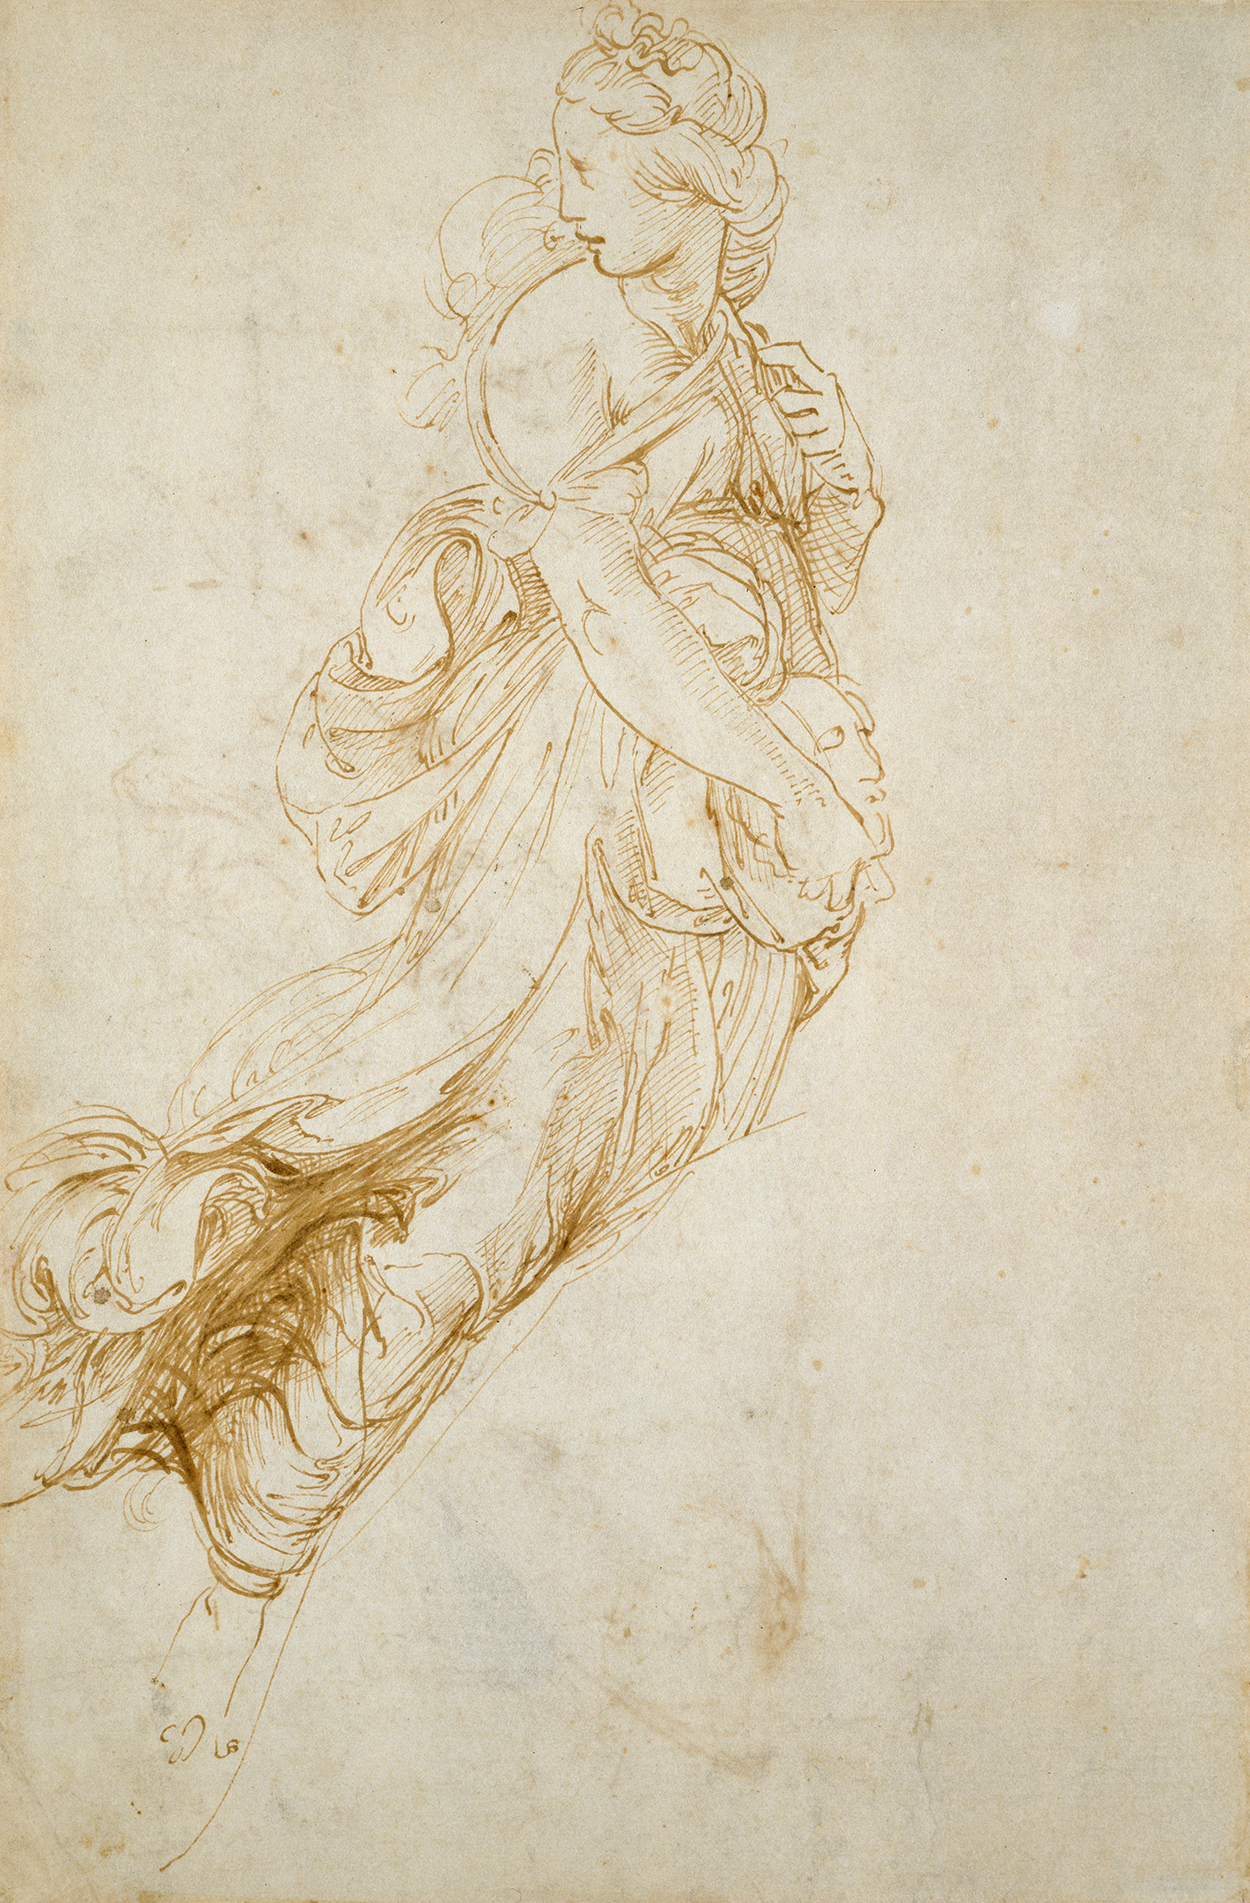 Муза Мельпомены by Raphael Santi - 1510-11 